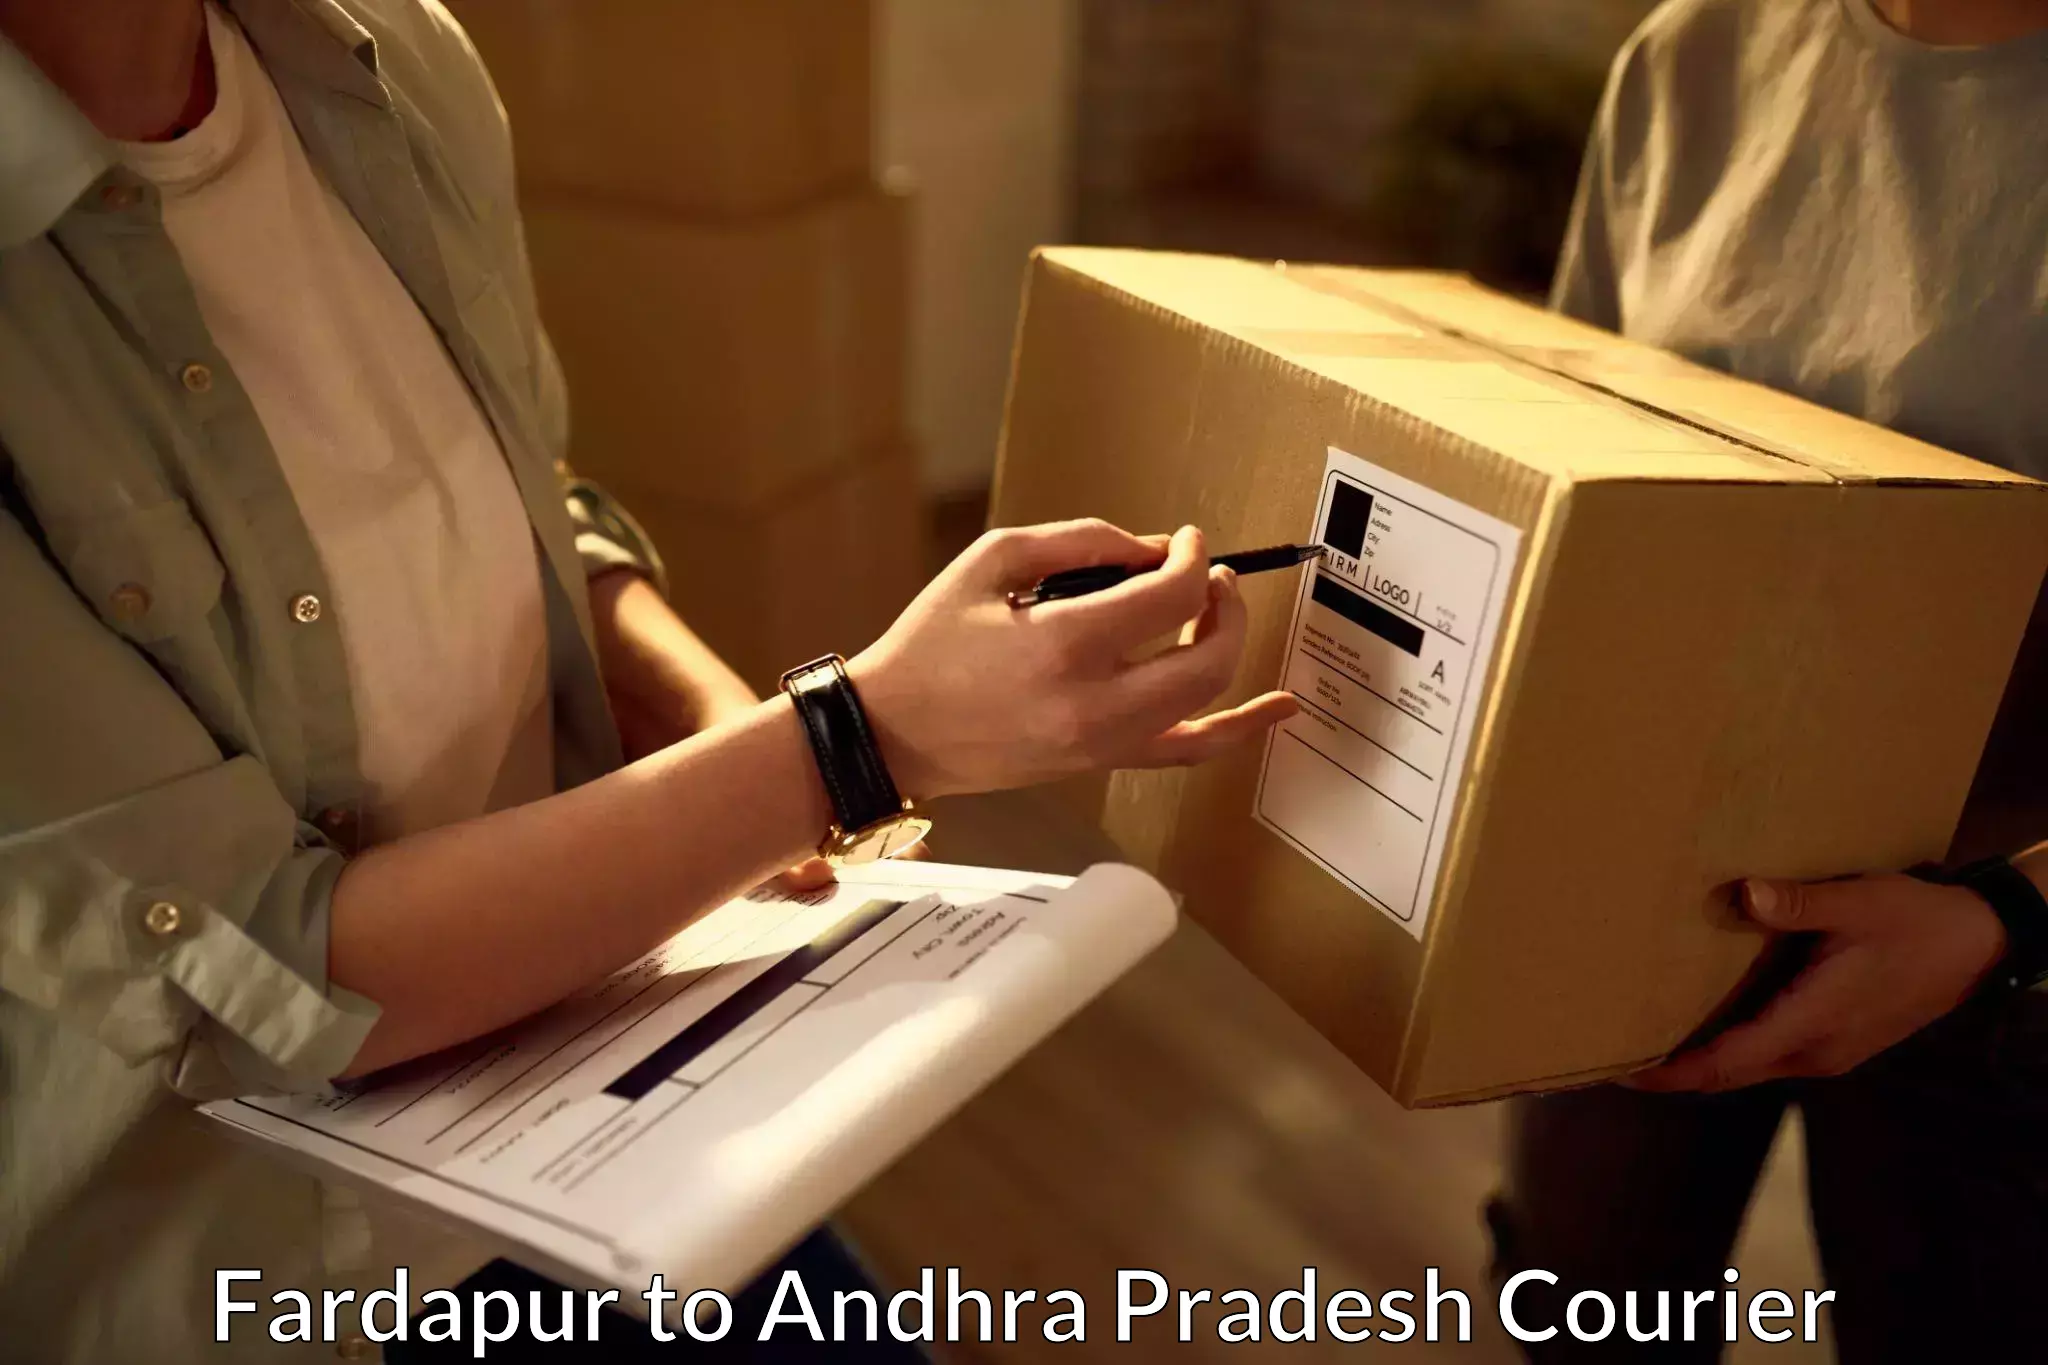 Courier insurance Fardapur to Tirupati